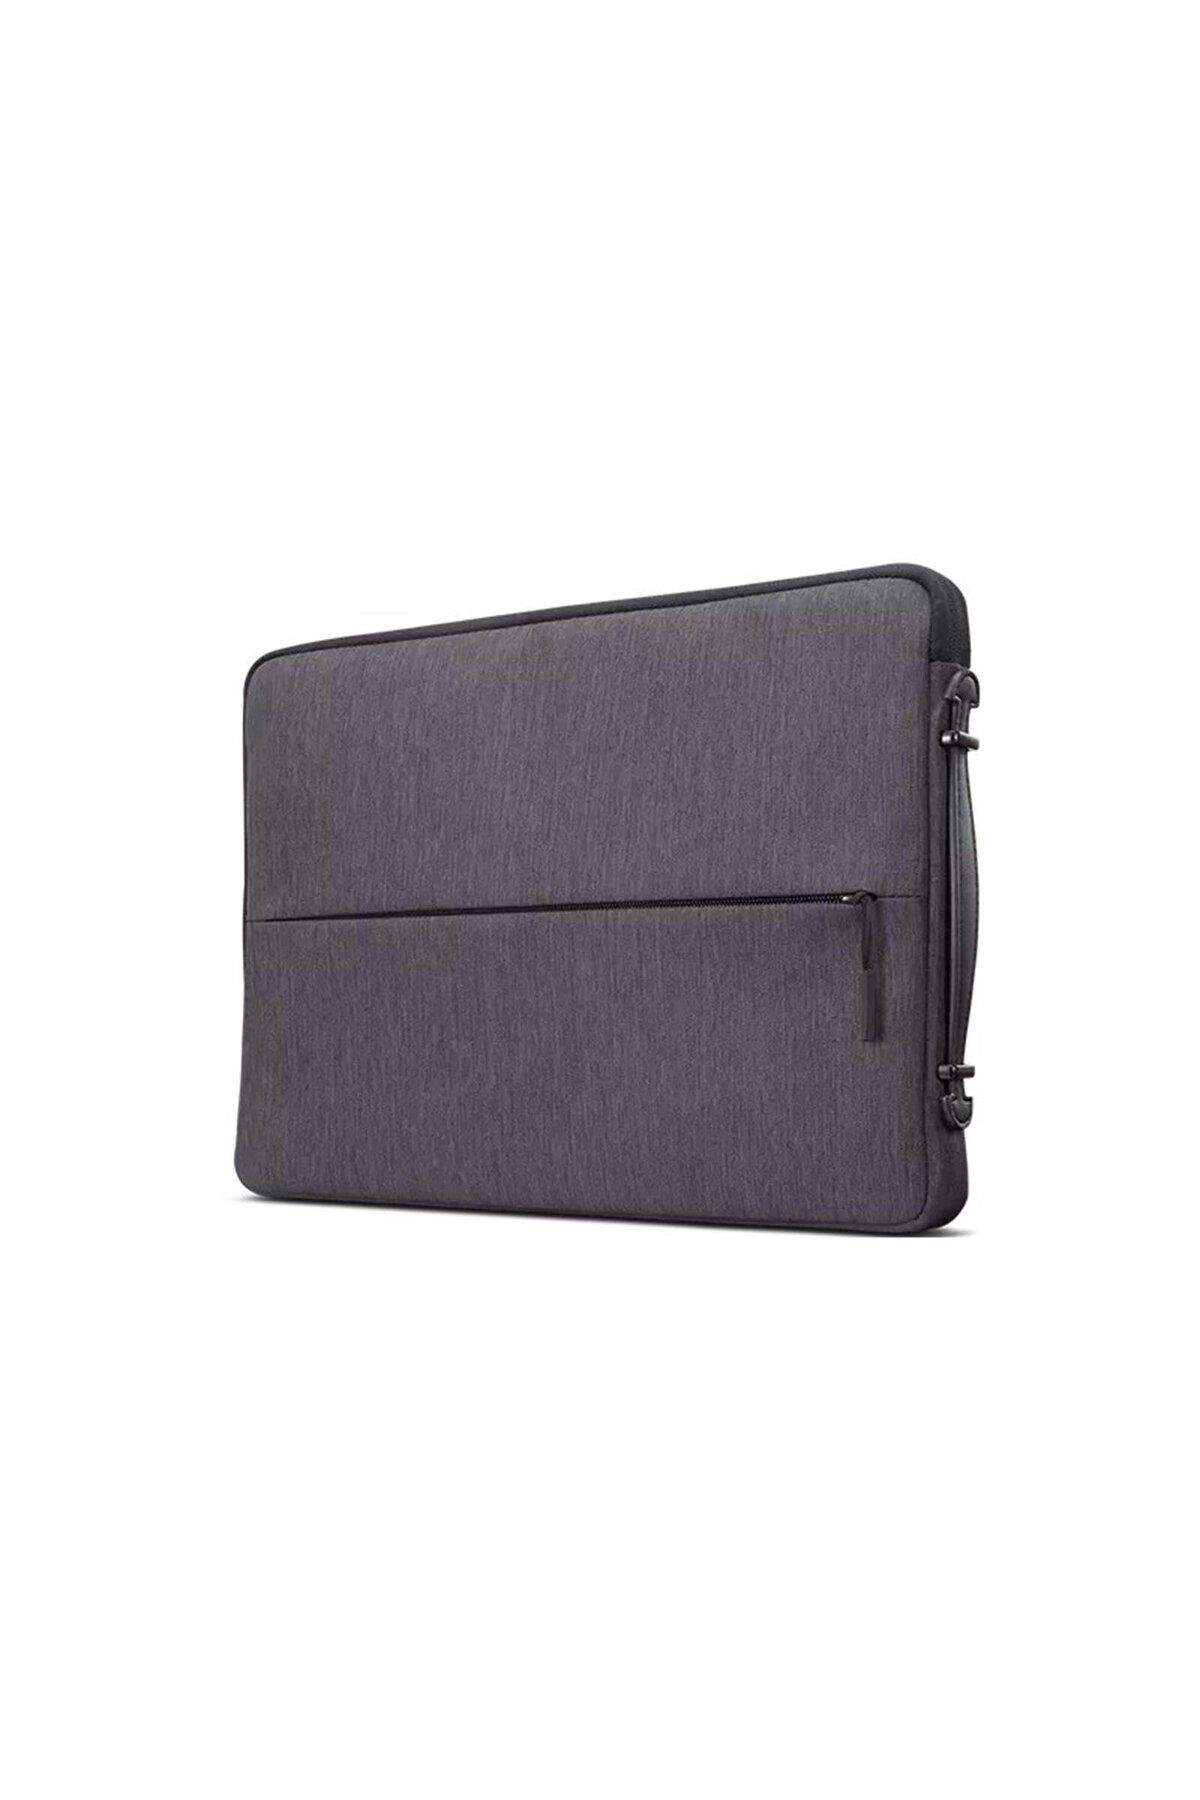 LENOVO 4X40Z50945 Business Casual 15.6" Sleeve Case Notebook Çantası